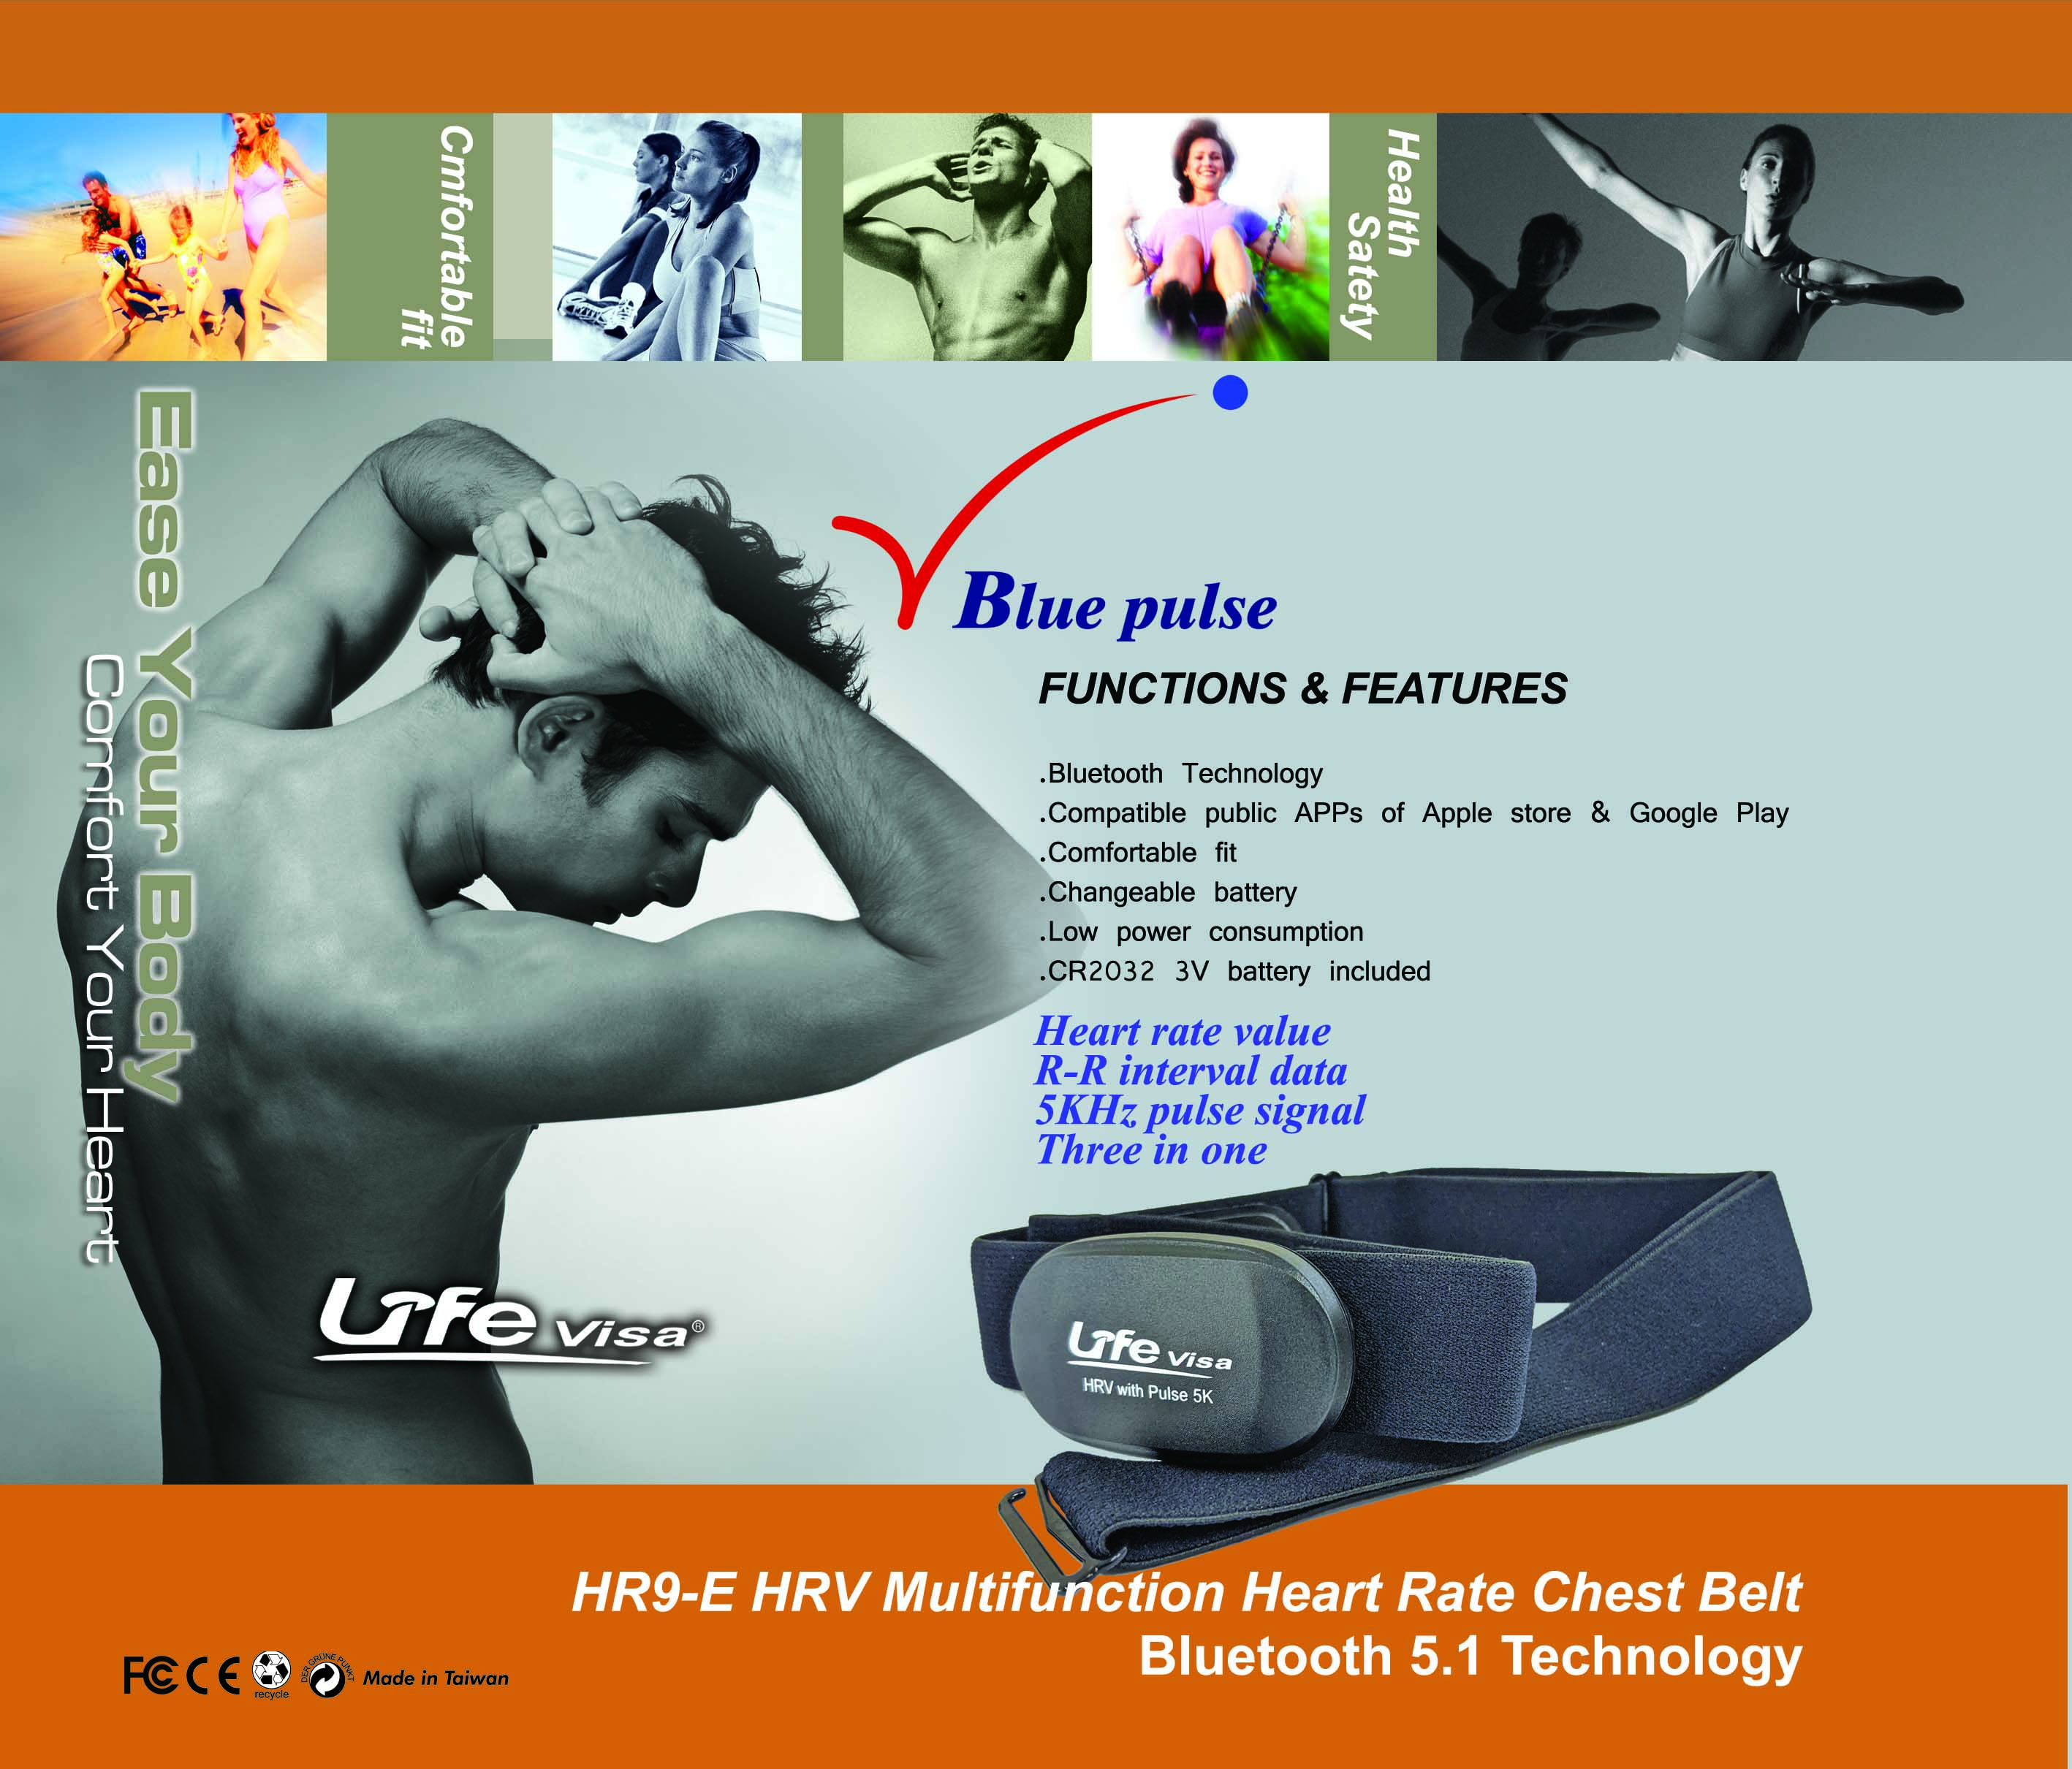 心跳帶，心率帶,藍芽心率帶,Lifevisa,lifevisa,Taiwan Biotronic, heart rate monitor,One-piece elastic heart rate chest strap,5.3Khz heart rate monitor,three in one